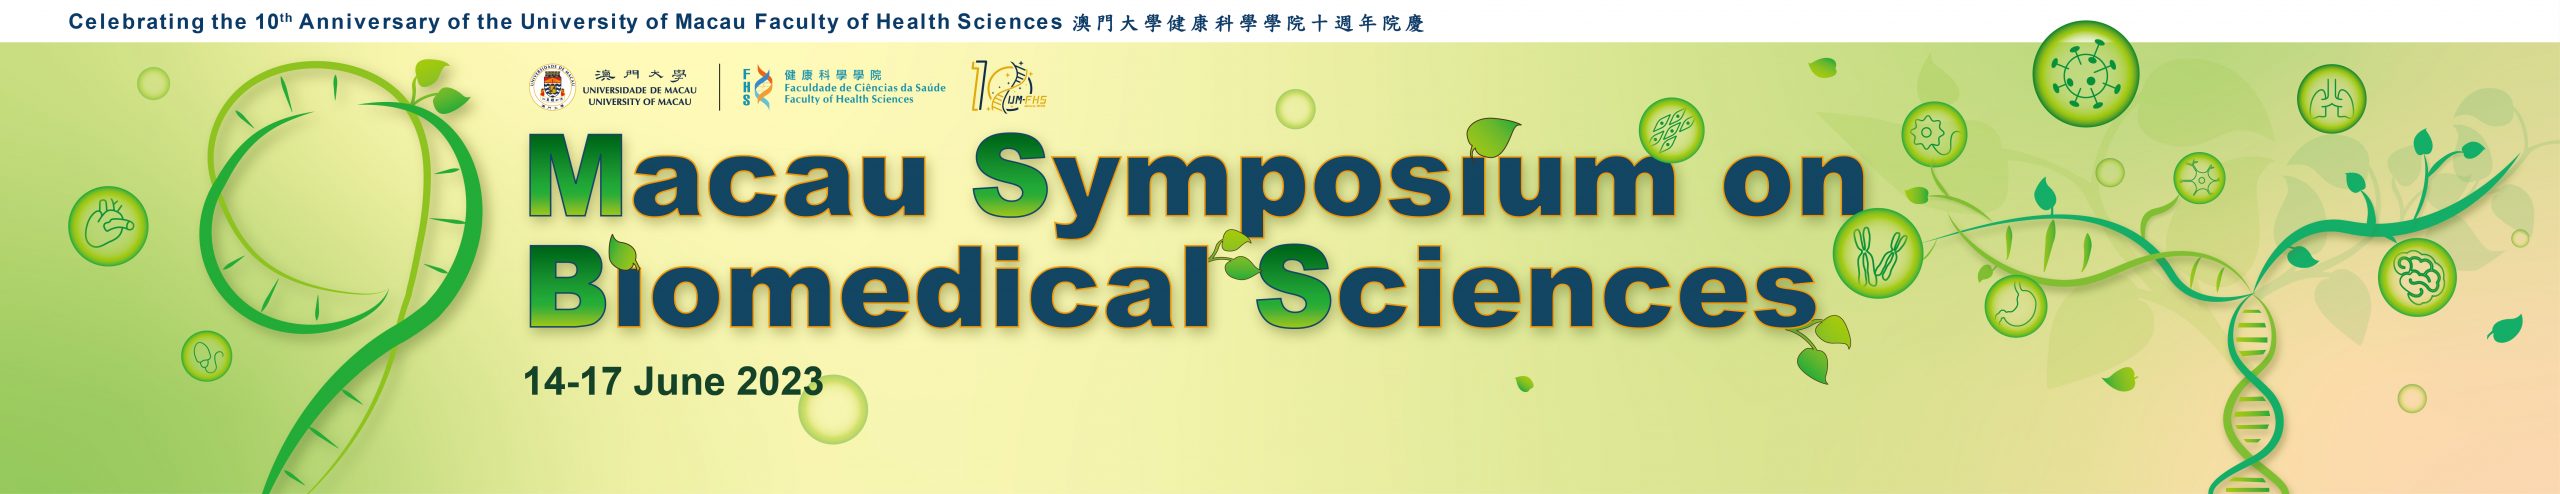 9th Macau Symposium on Biomedical Sciences 2023 Logo